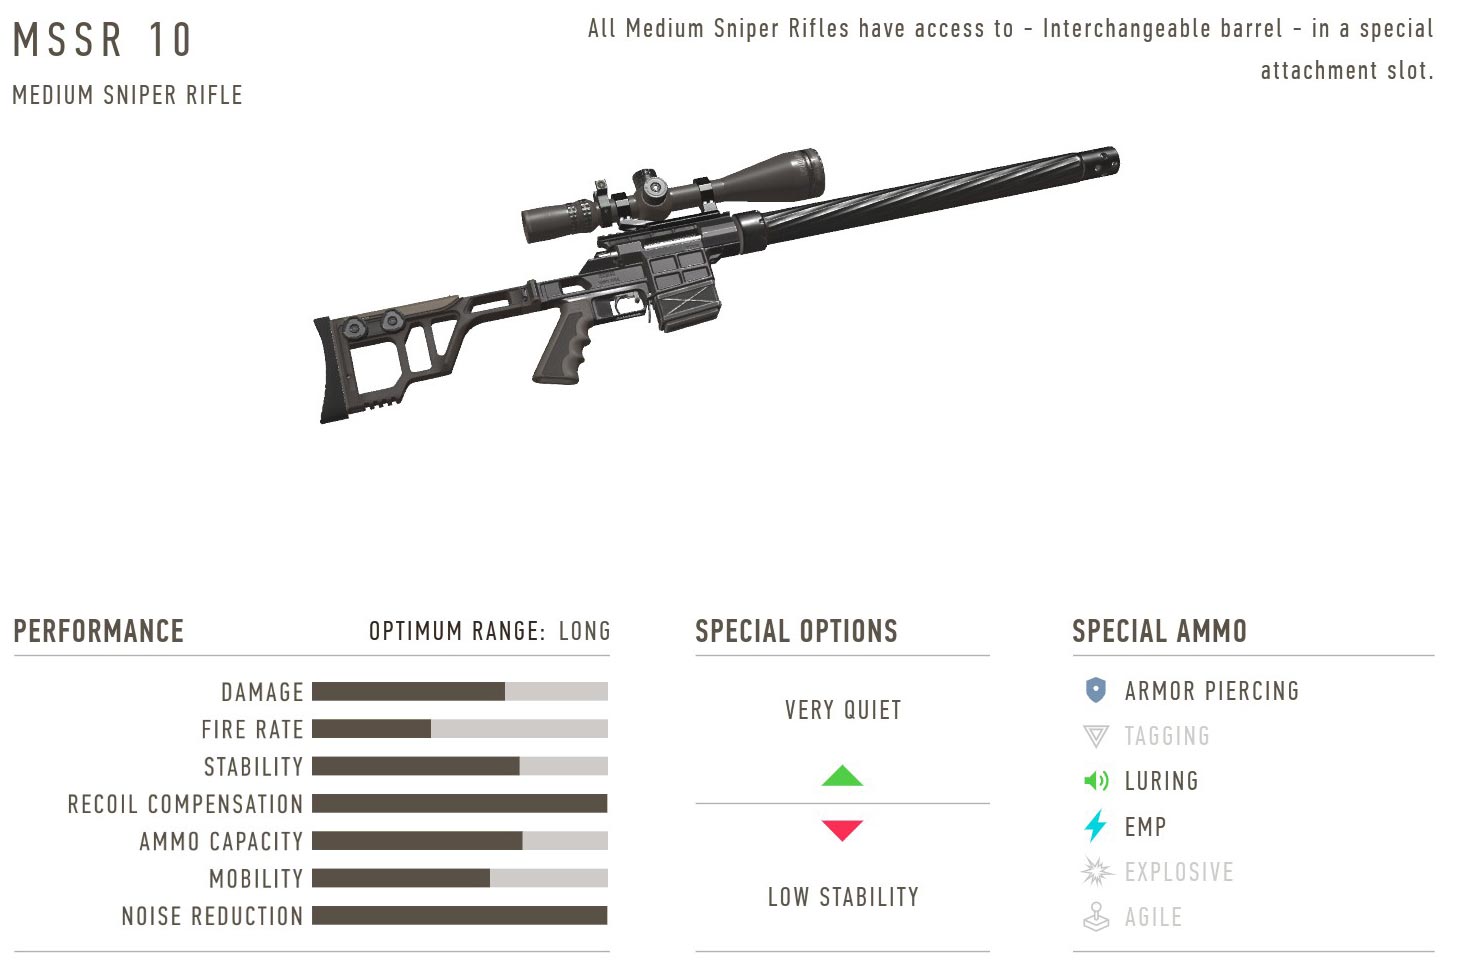 Sniper / Sniper 2